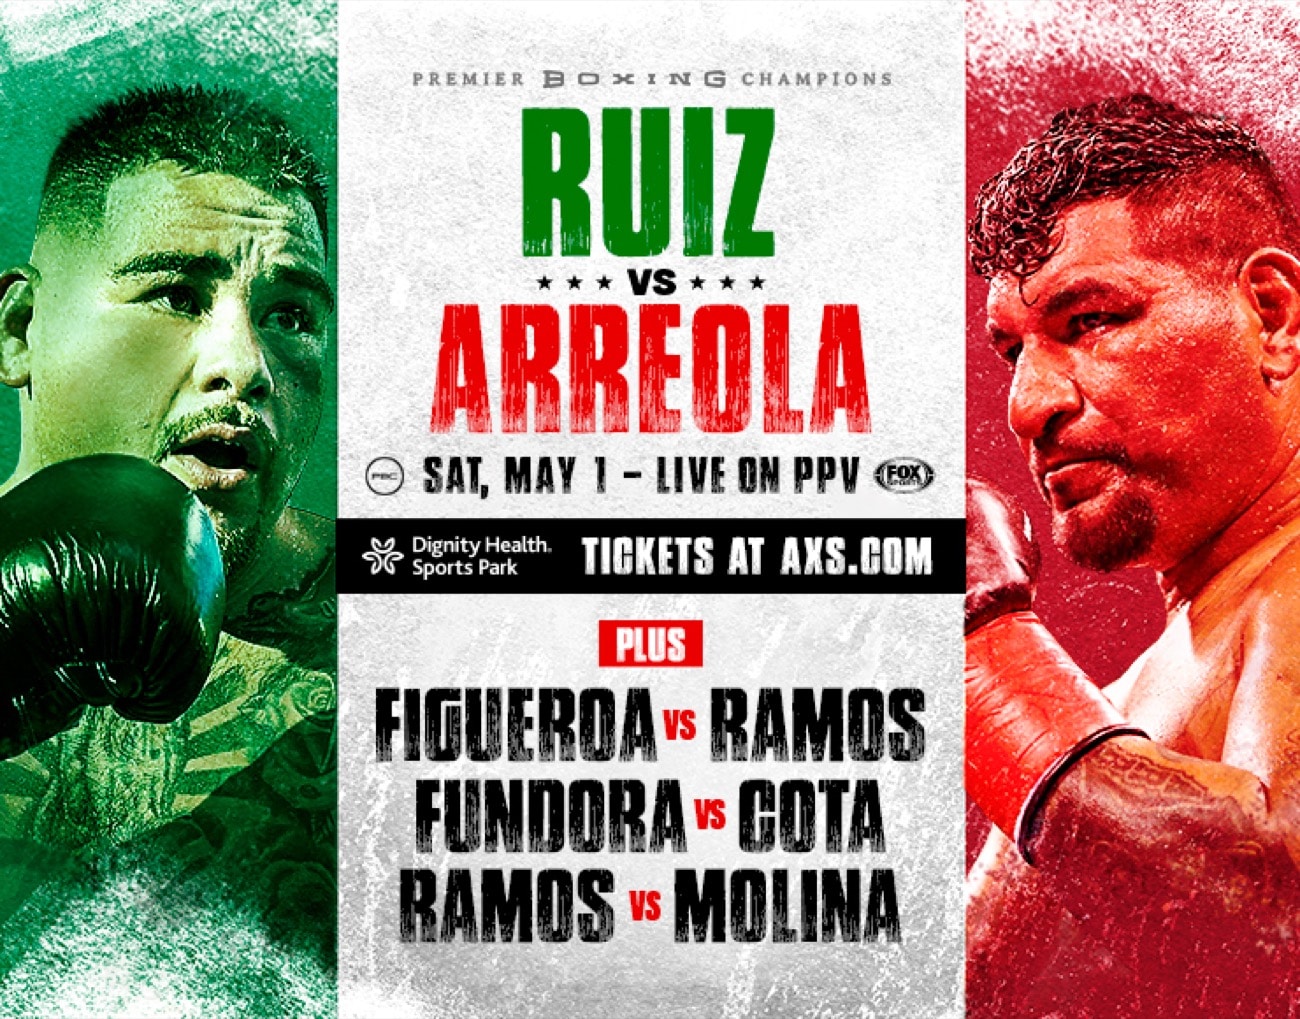 Chris Arreola, Andy Ruiz Jr. boxing photo and news image